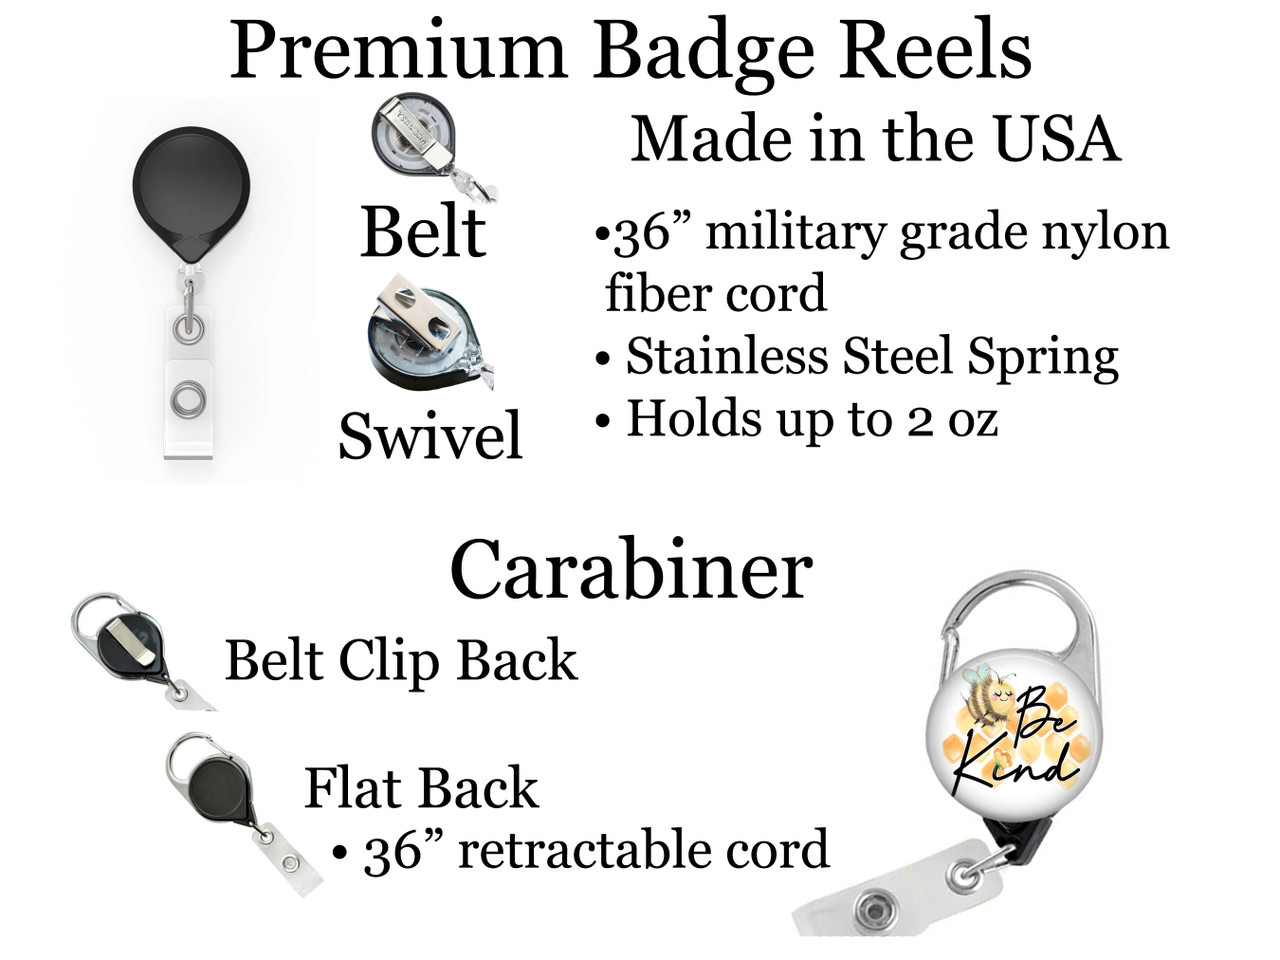 Bee Kind Retractable ID Badge Reel, Lanyard, or Carabiner - The